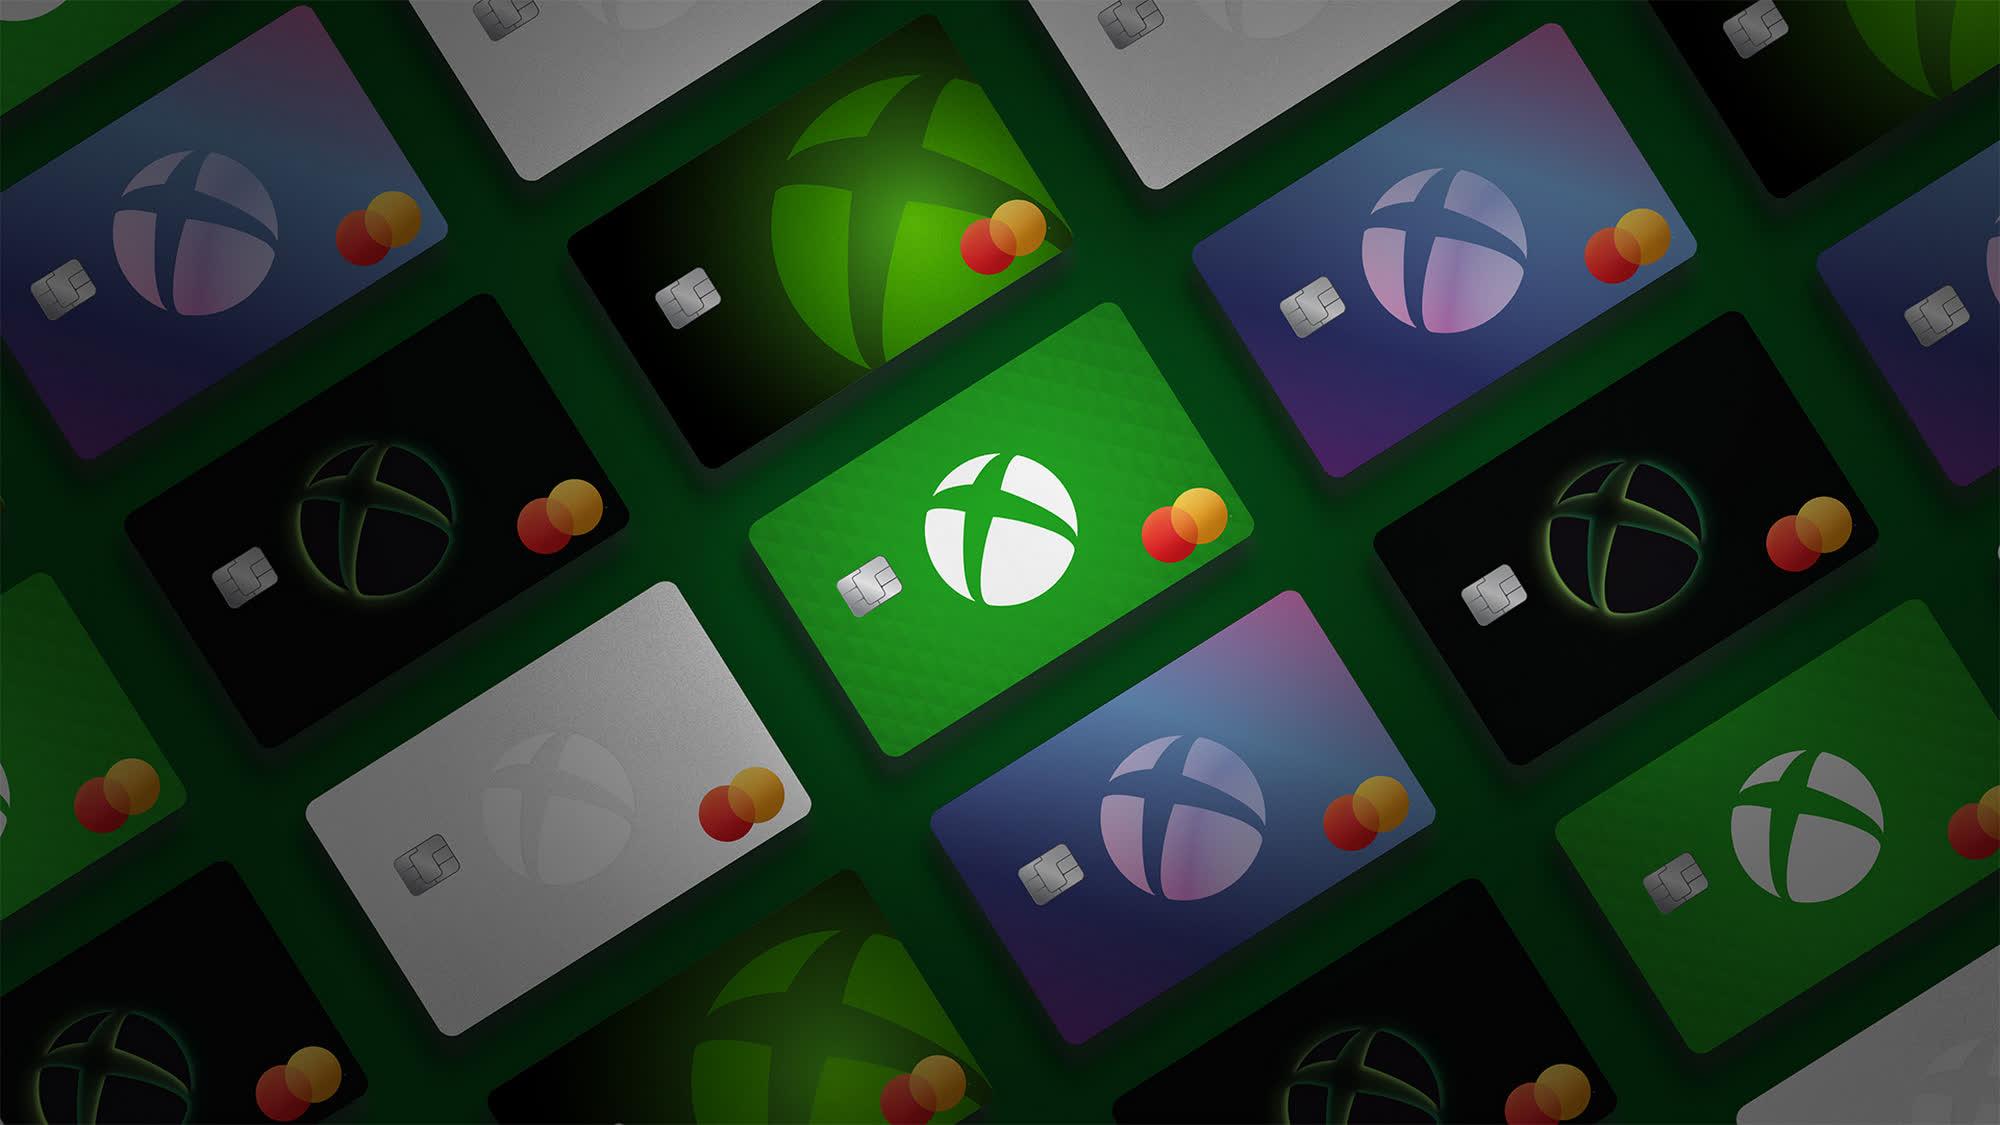 La tarjeta de crédito Microsoft Xbox ya no está en versión beta y está disponible para todos los residentes de EE. UU.